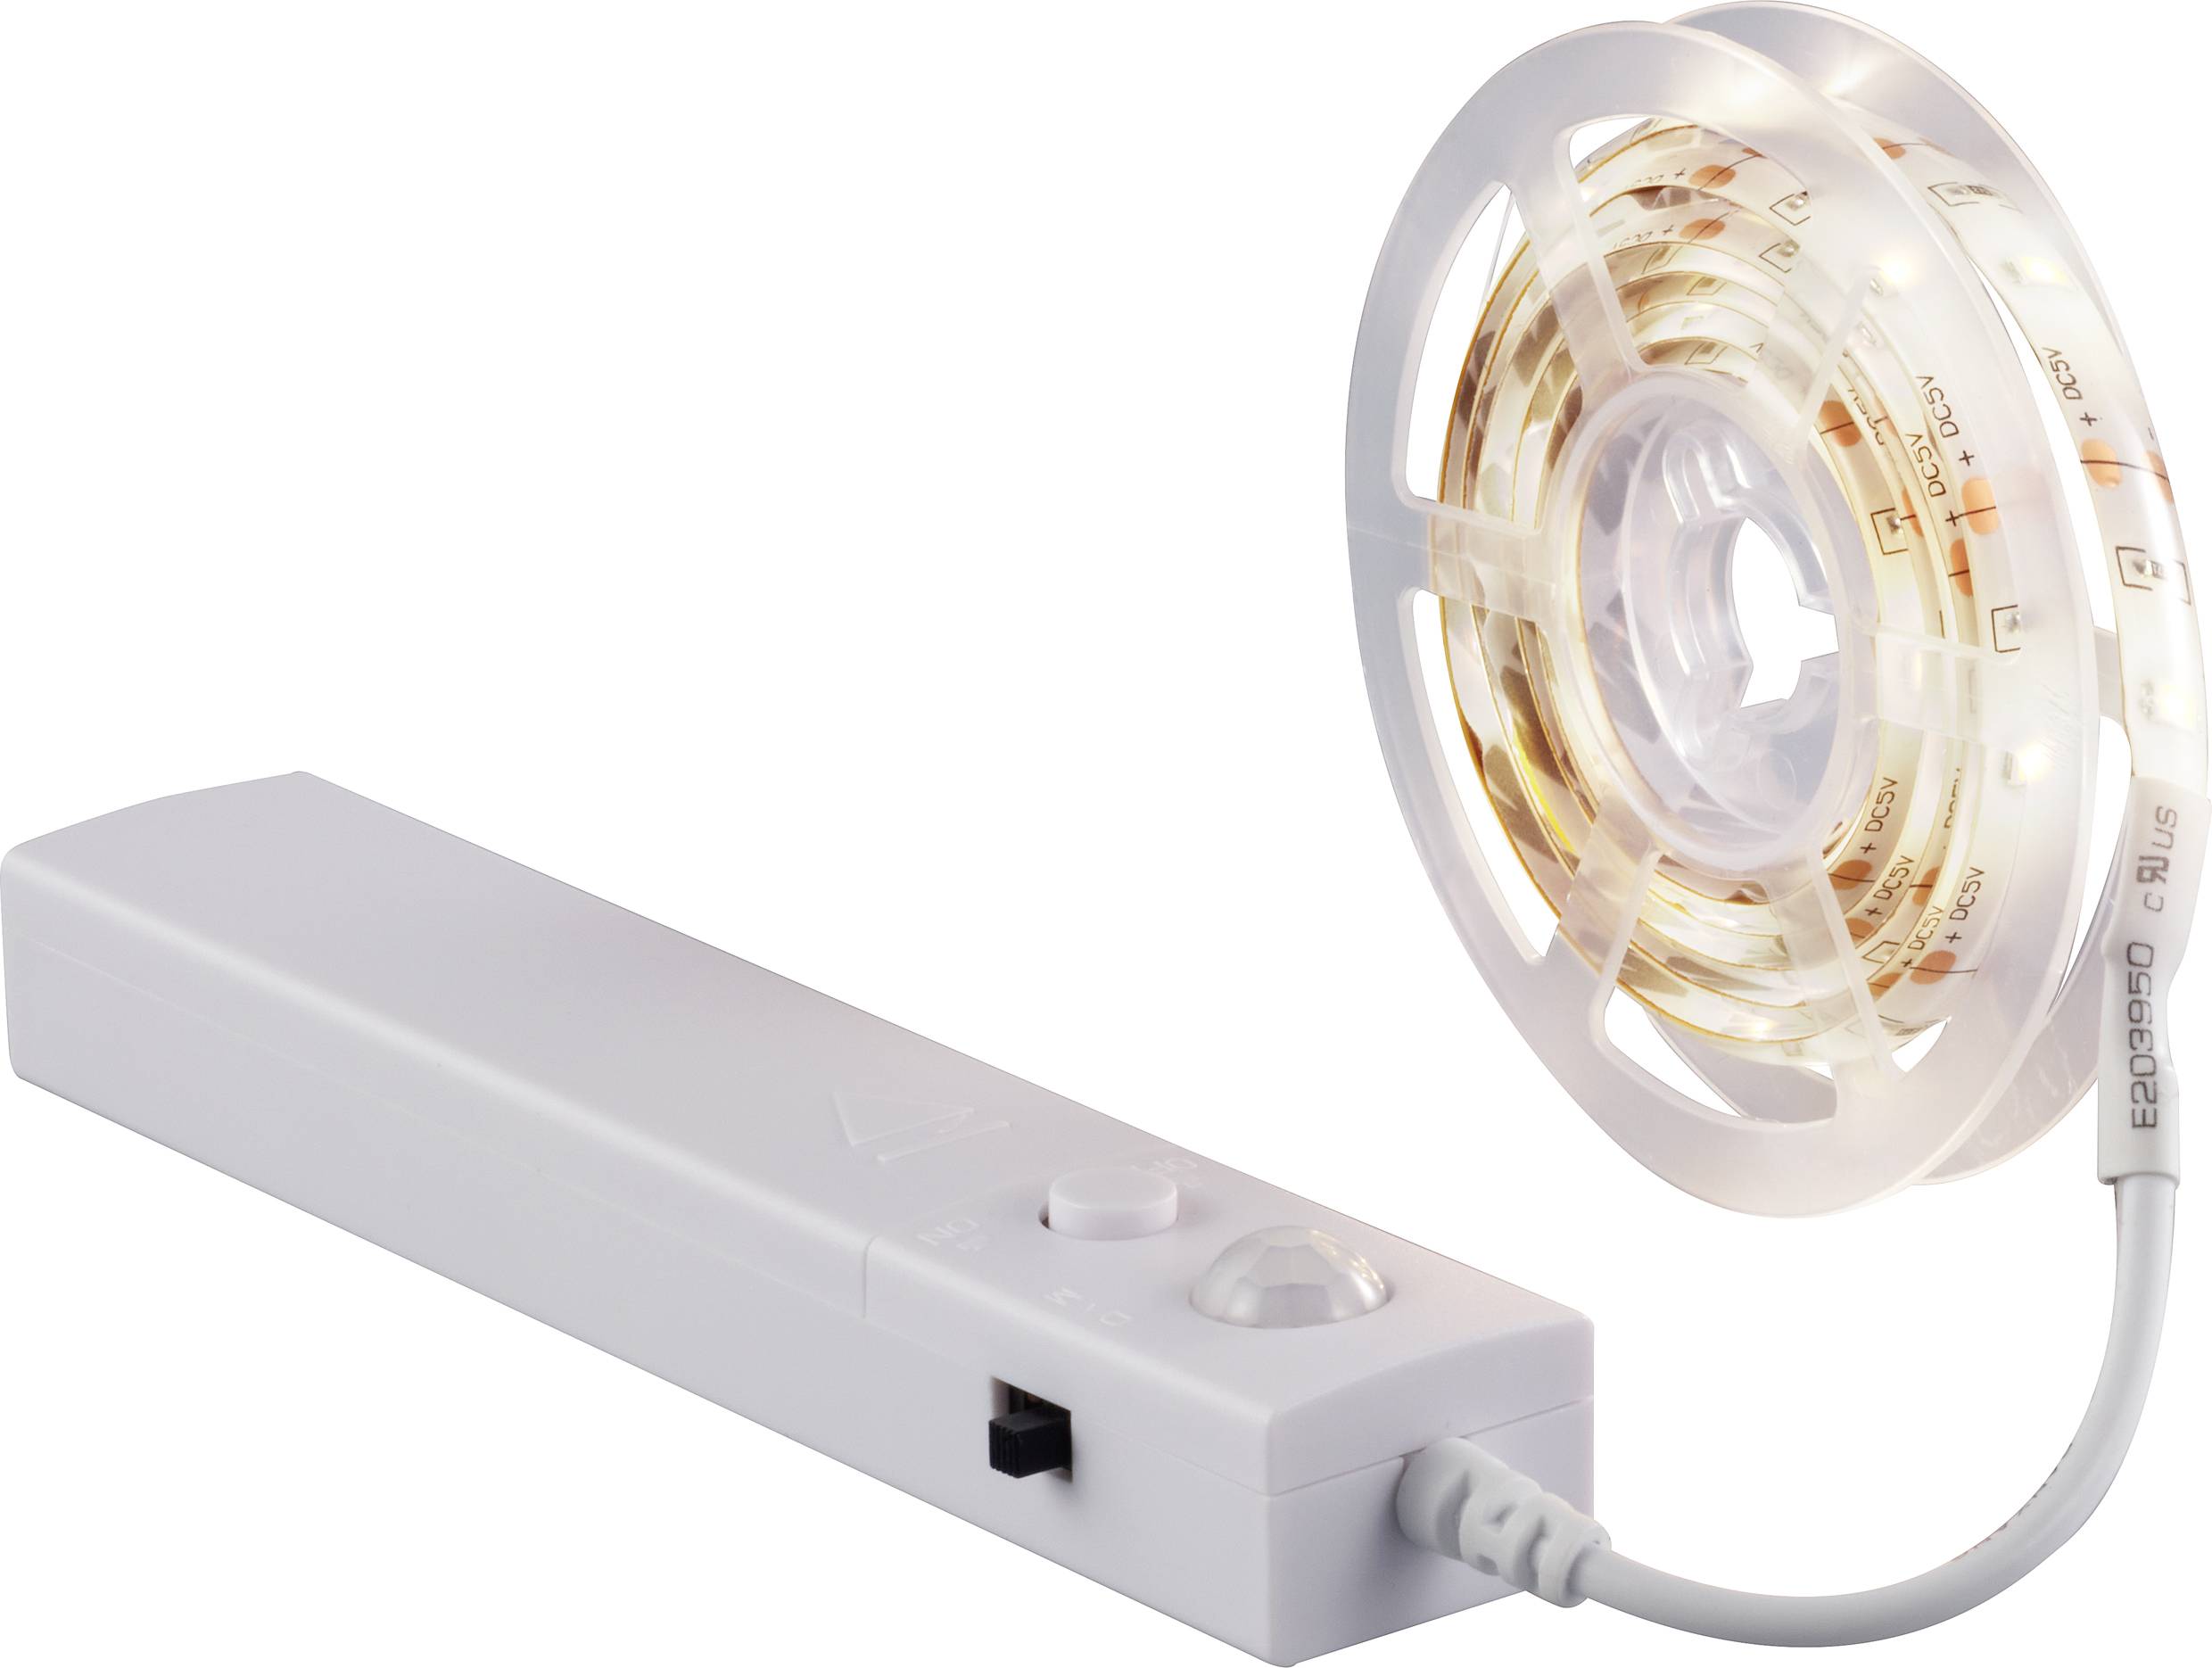 Demonstreer Uitgaan omvang LED strip + battery box 4.5 V 1 m Warm white | Conrad.com